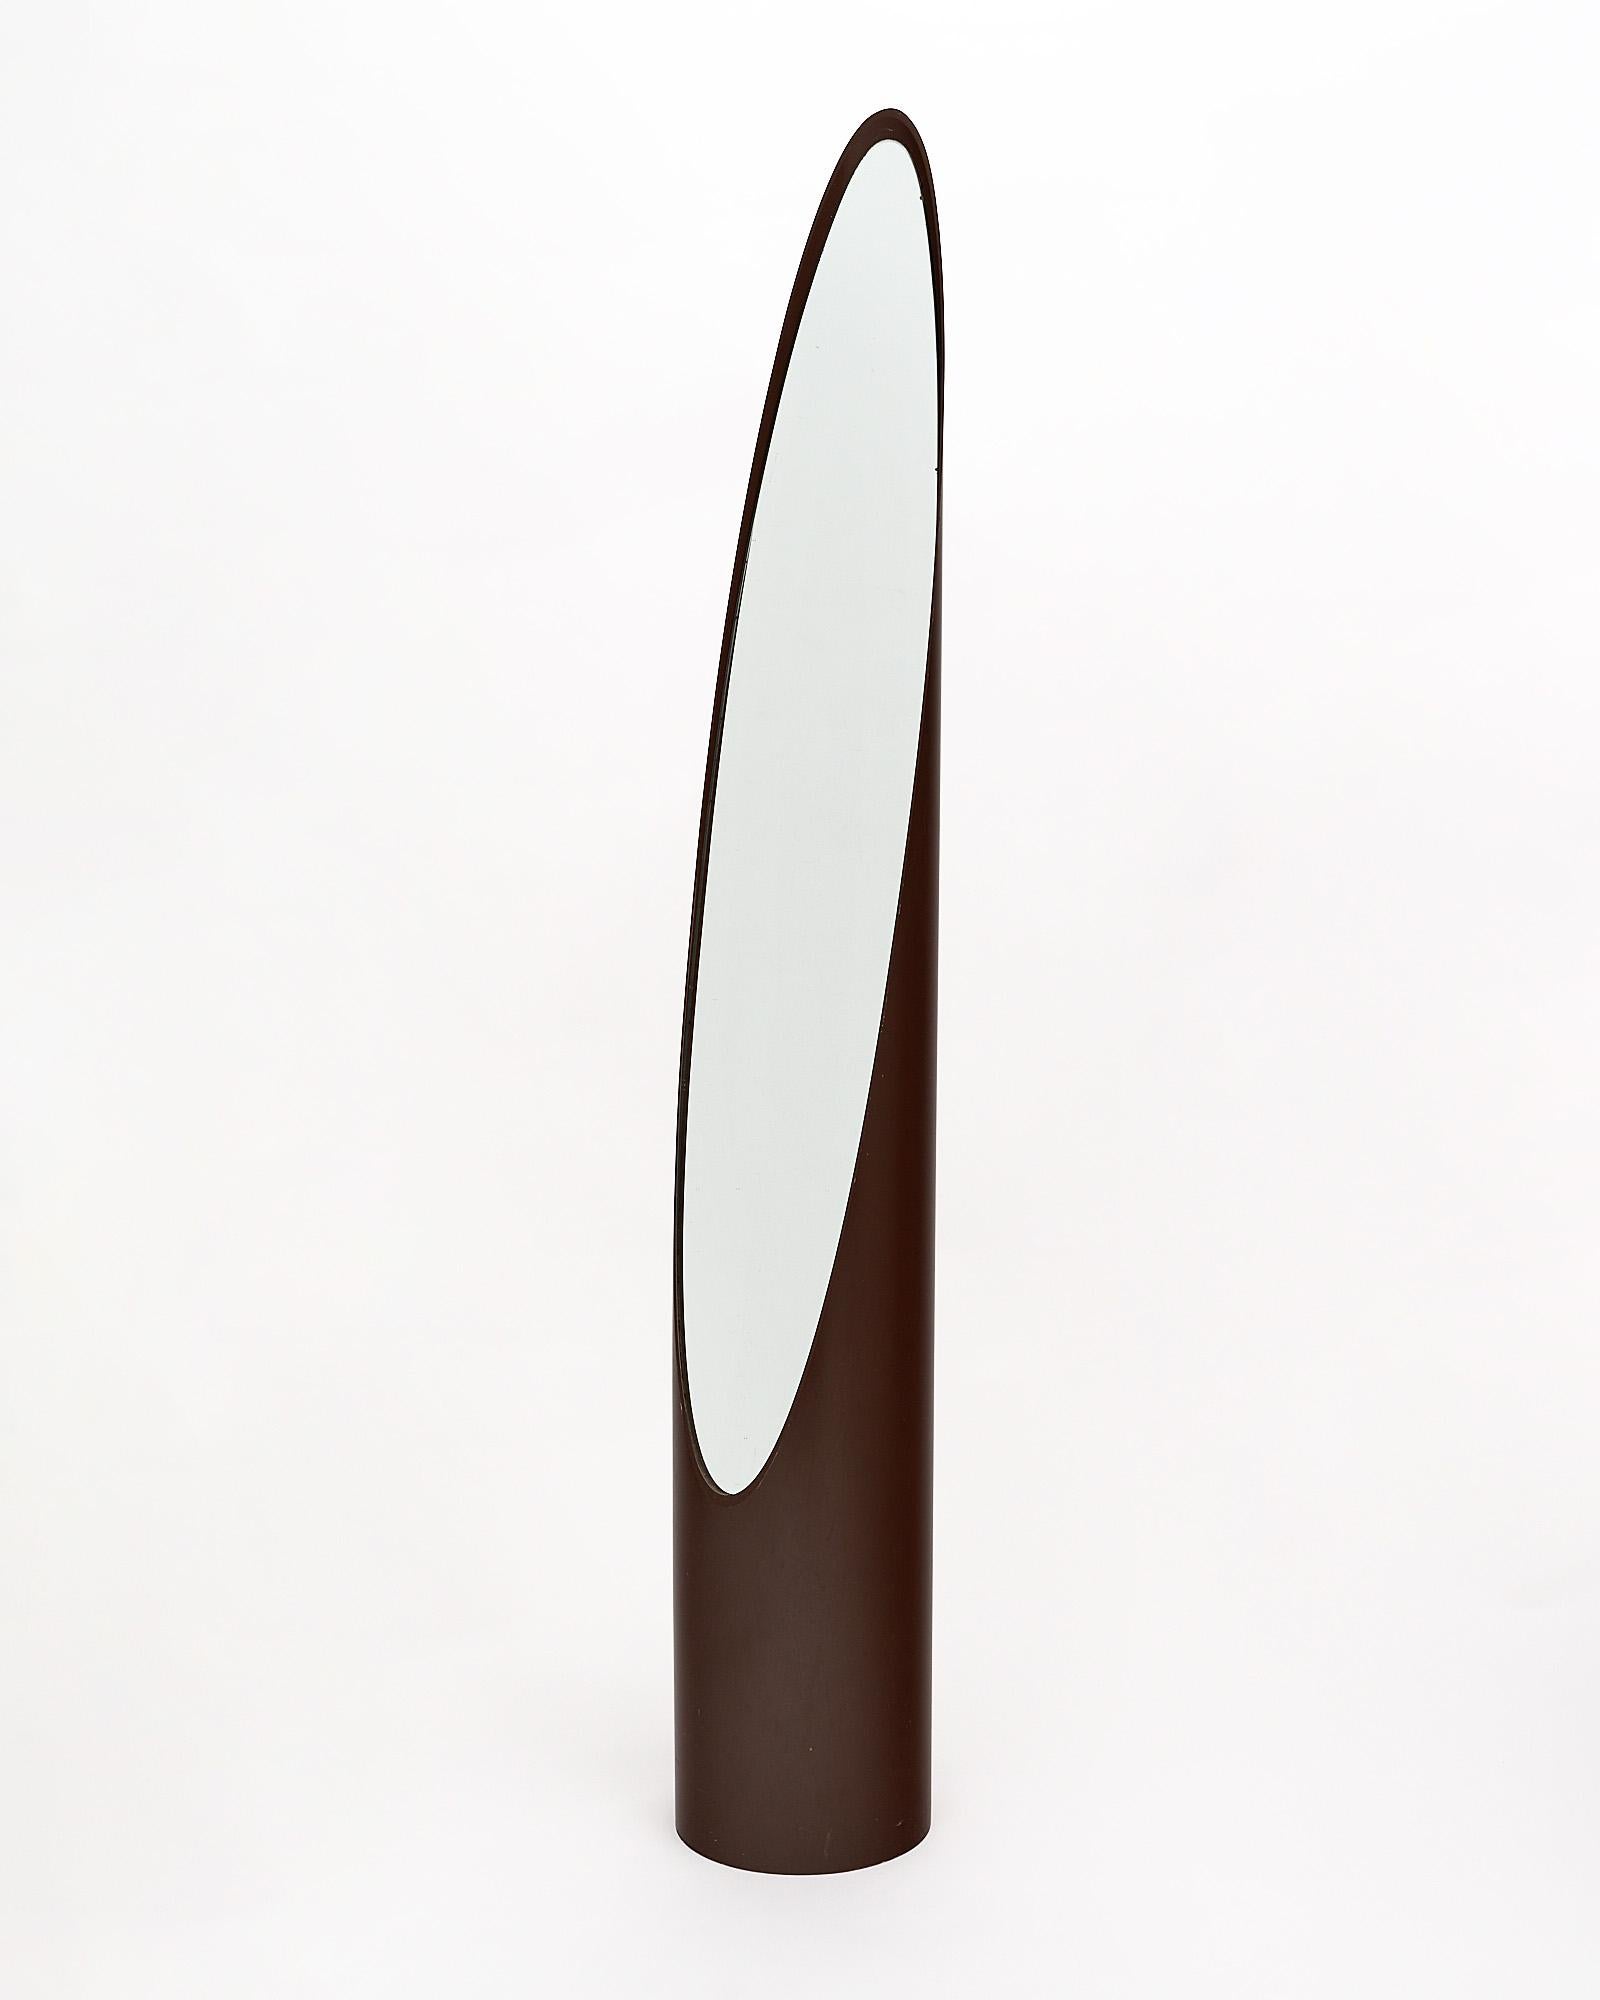 Miroir de rouge à lèvres Unghia de Rodolfo Bonetto composé d'un étui en acrylique brun et d'un miroir oblong original.